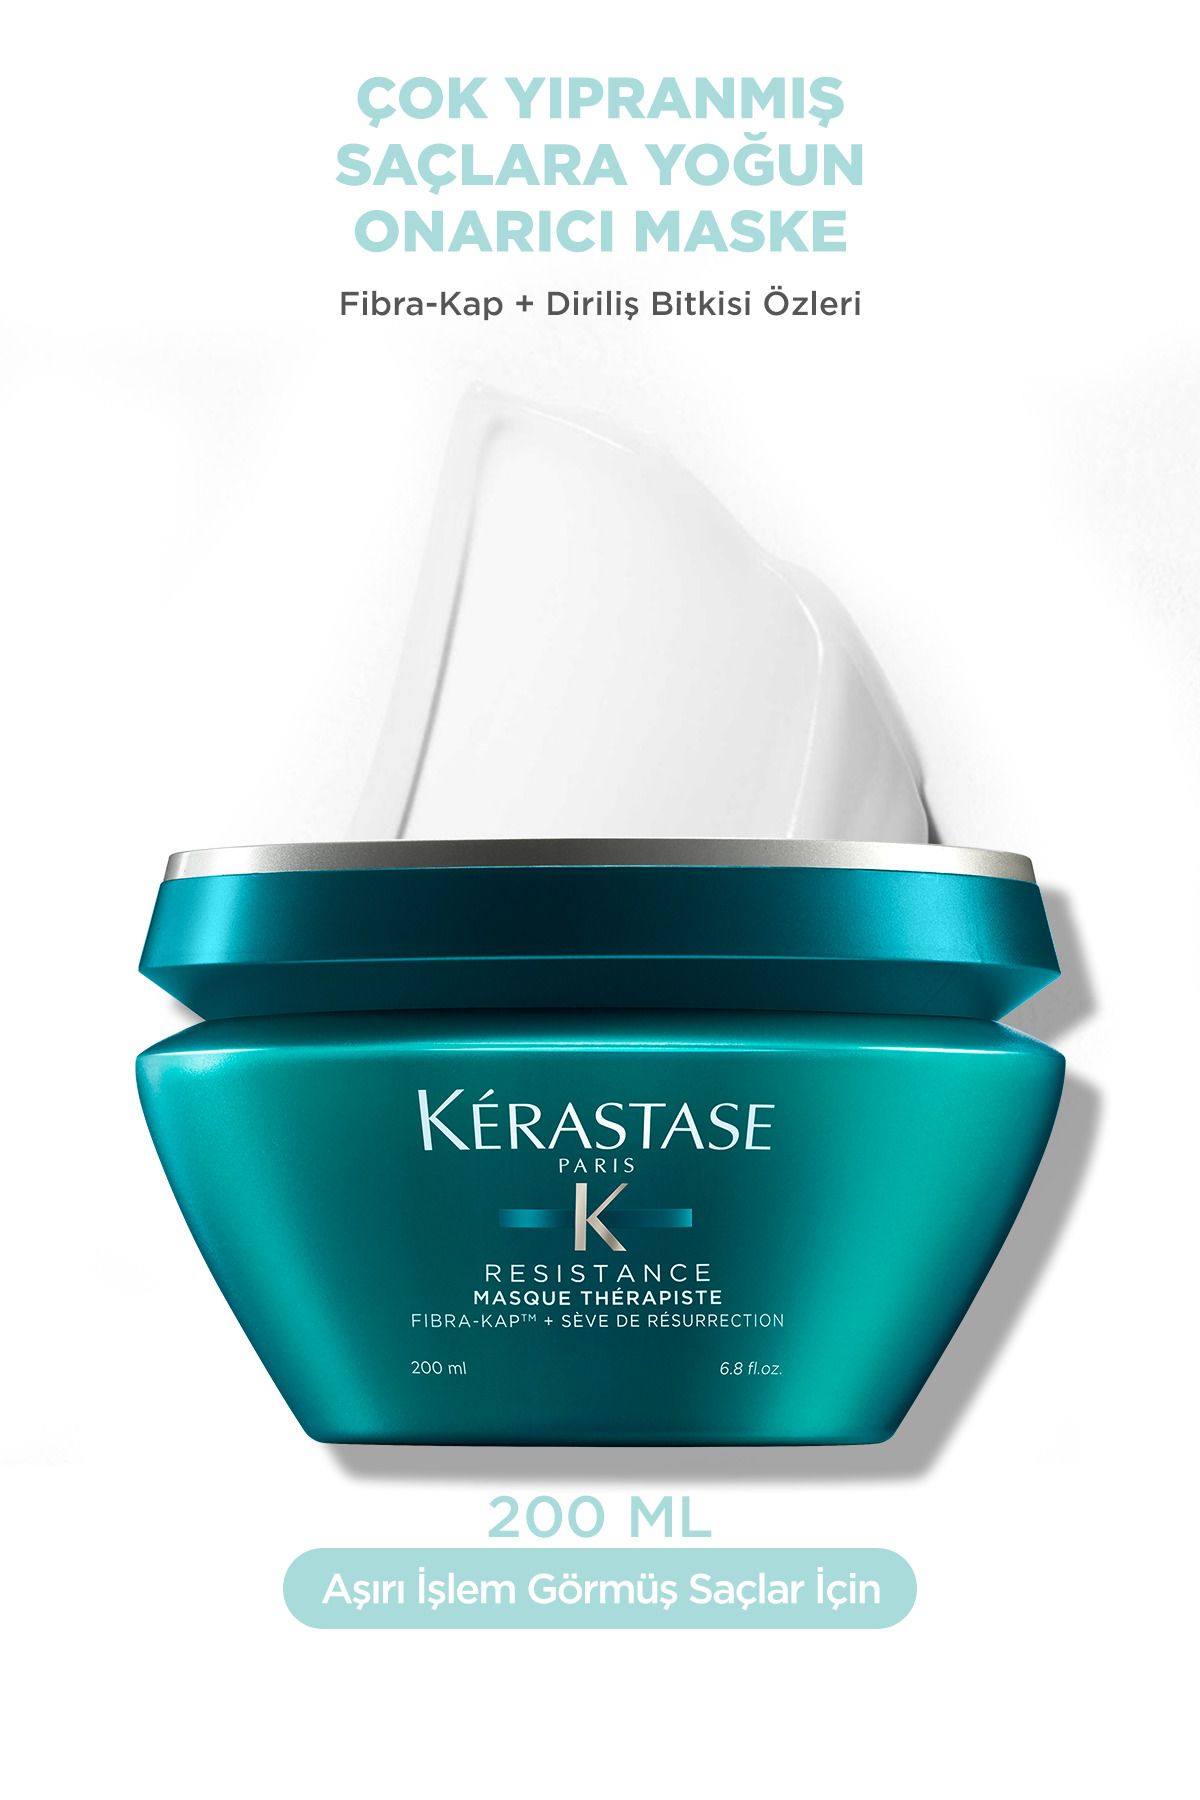 ماسک ترمیم کننده Resistance Masque برای موهای خیلی آسیب دیده 200 میل کراستاس Kerastase